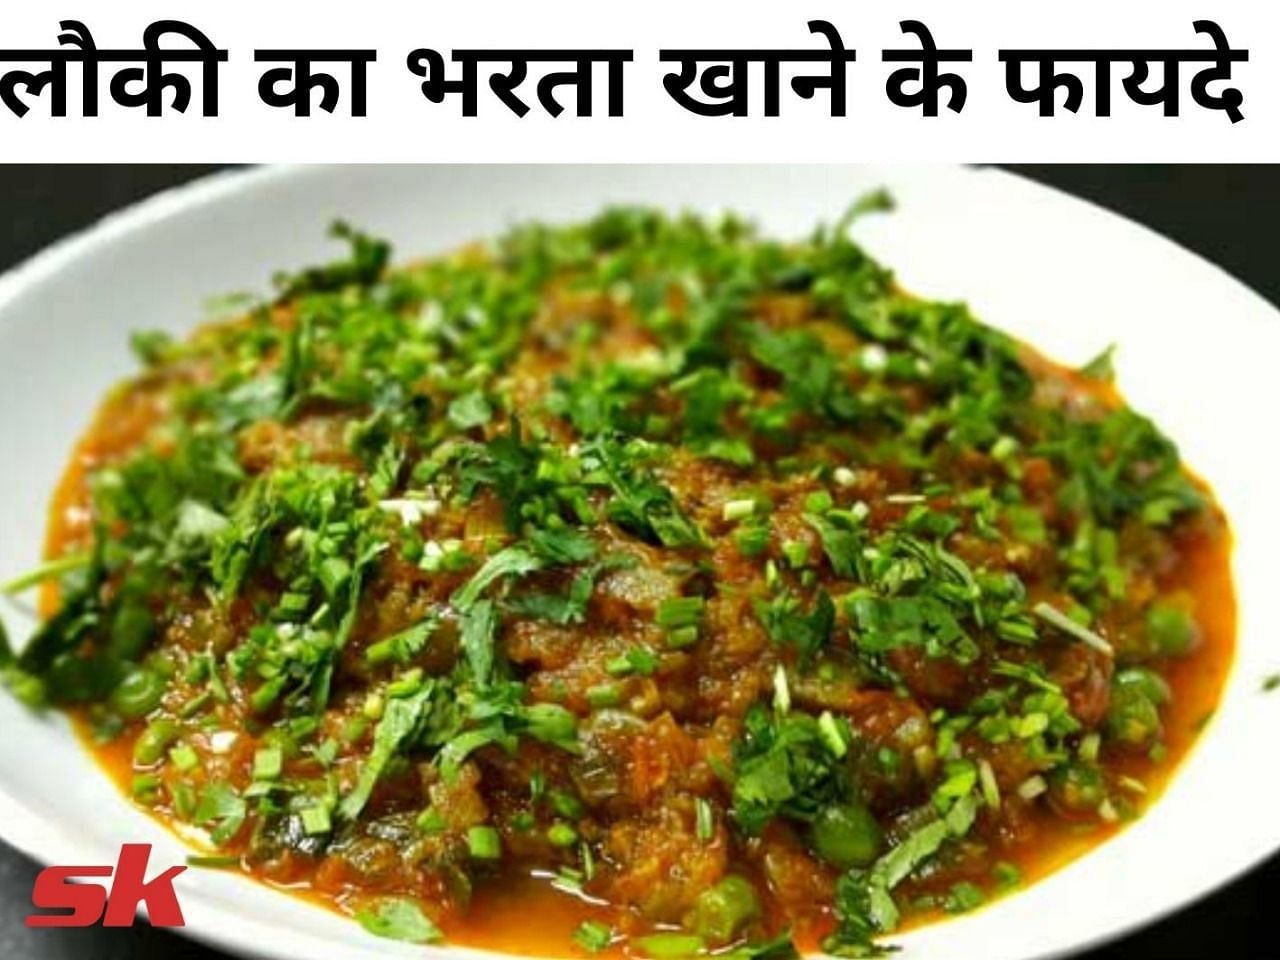 लौकी का भरता खाने के फायदे (फोटो - sportskeeda hindi)